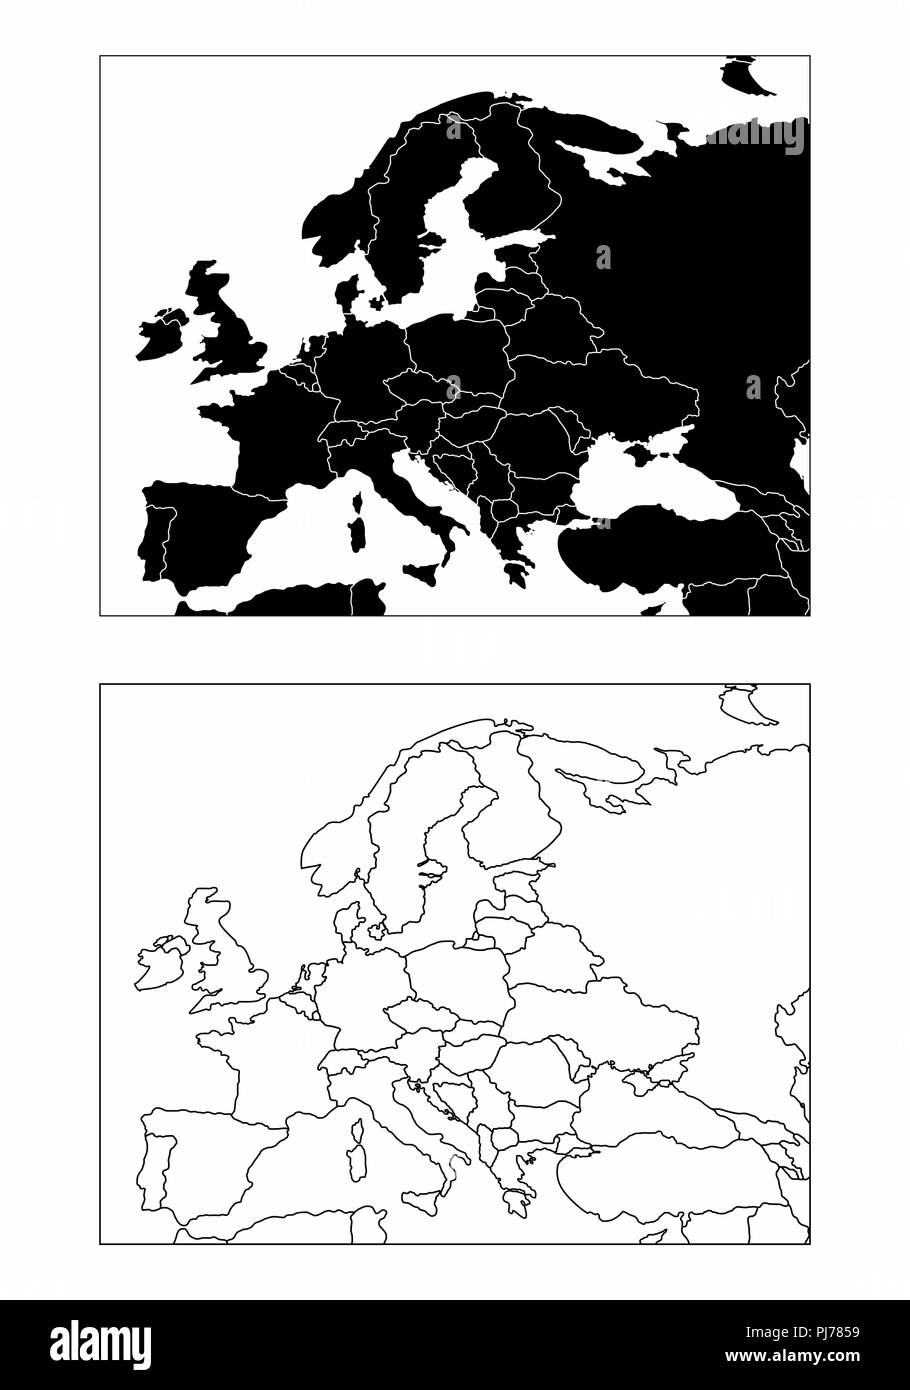 Vereinfachte Karten von Europa mit Ländern Grenzen. Schwarze und weiße Umrisse. Stock Vektor